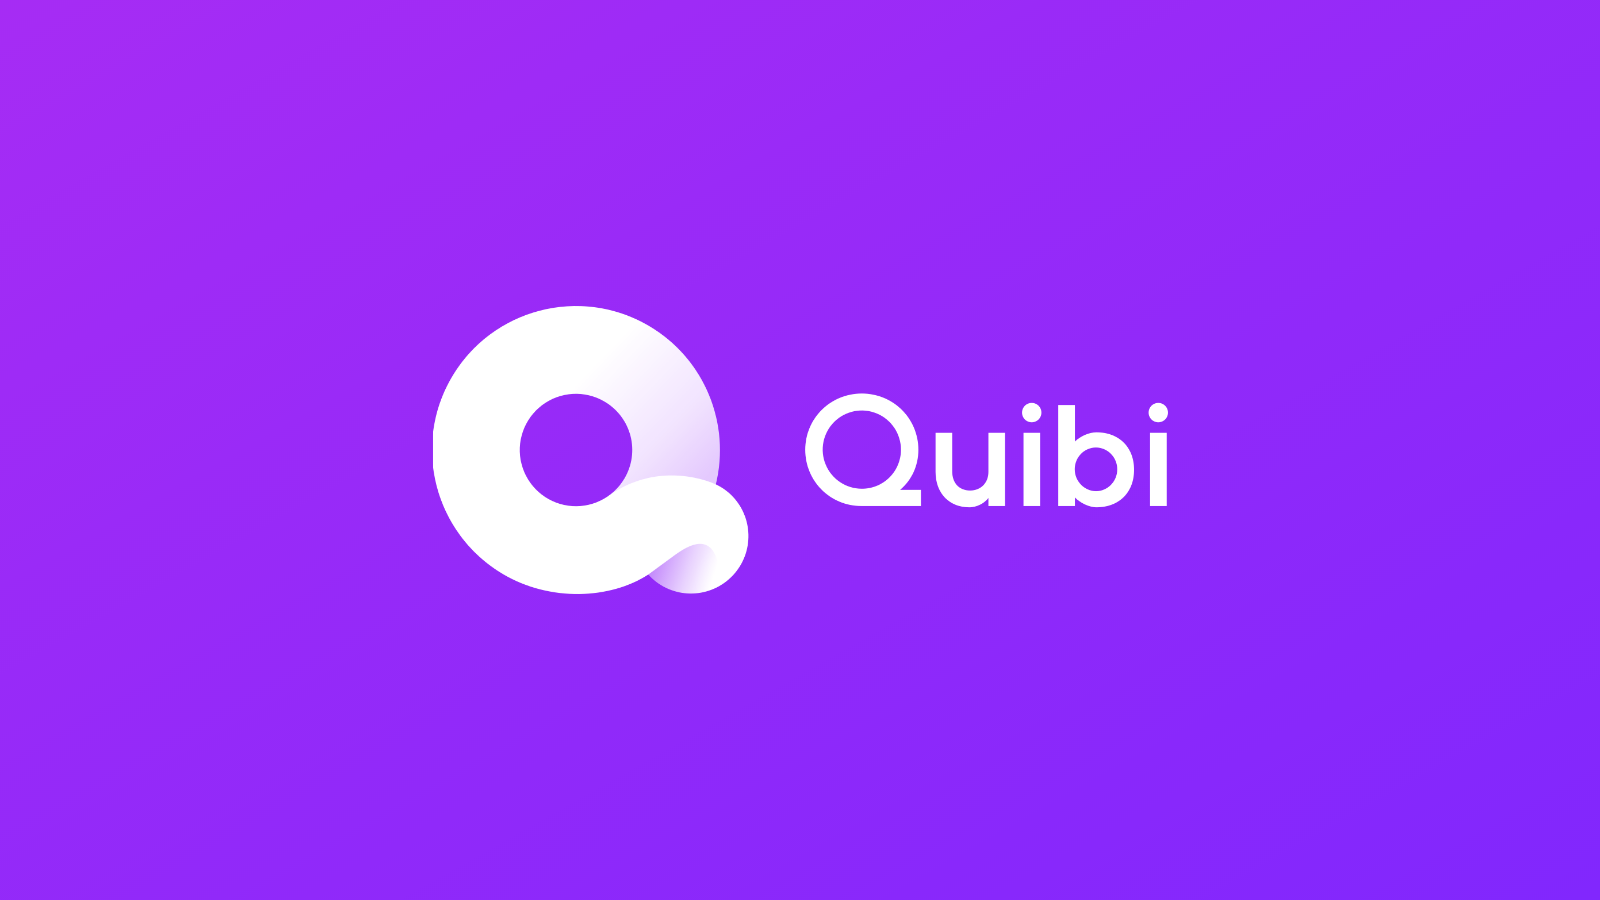 إطلاق خدمة البث الجديدة "Quibi" بإصدار تجريبي مجاني لمدة 90 يومًا 20